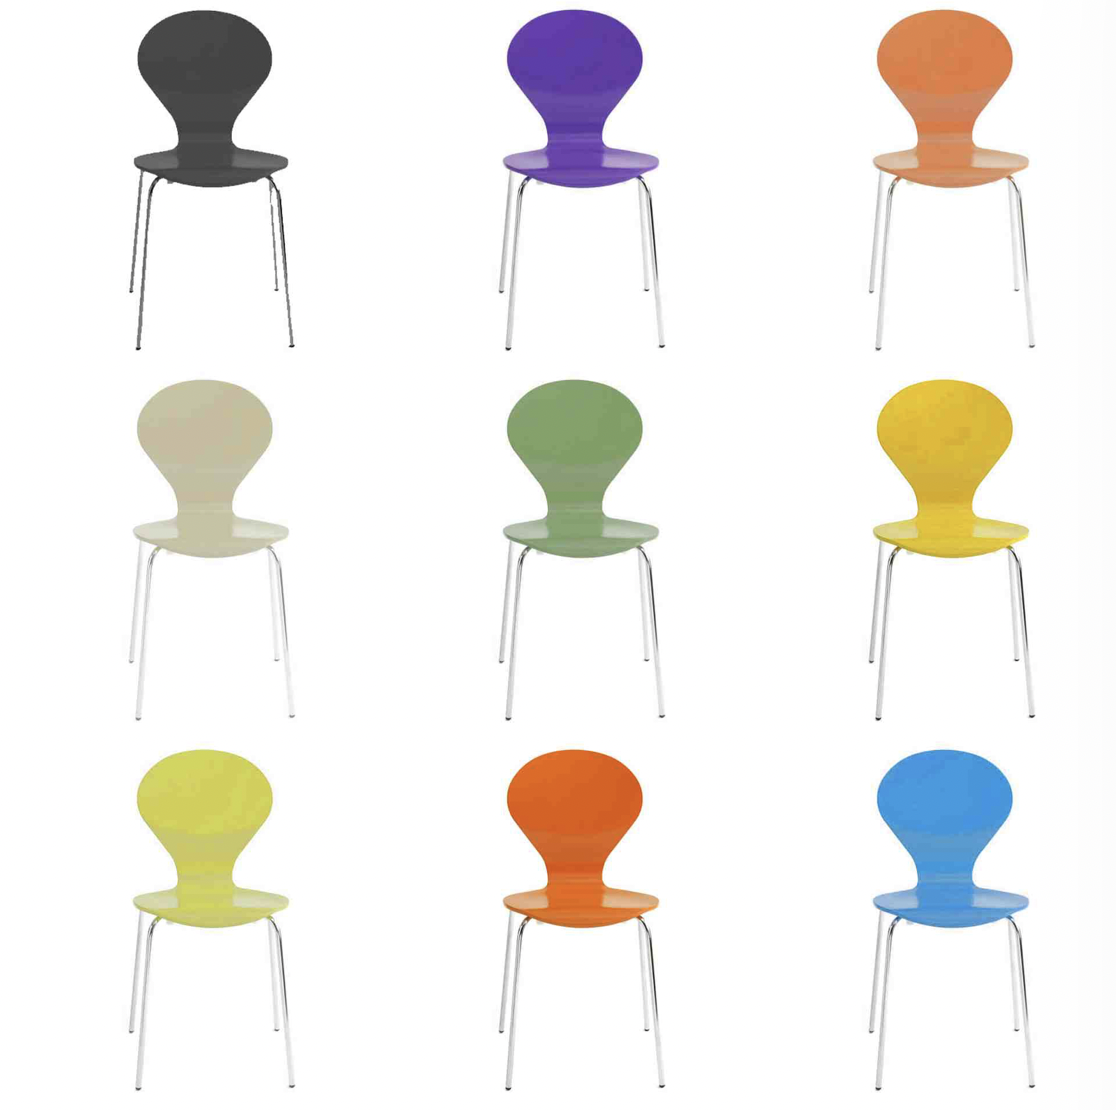 Foto : RONDO stoel van Danerka in 23 kleuren leverbaar